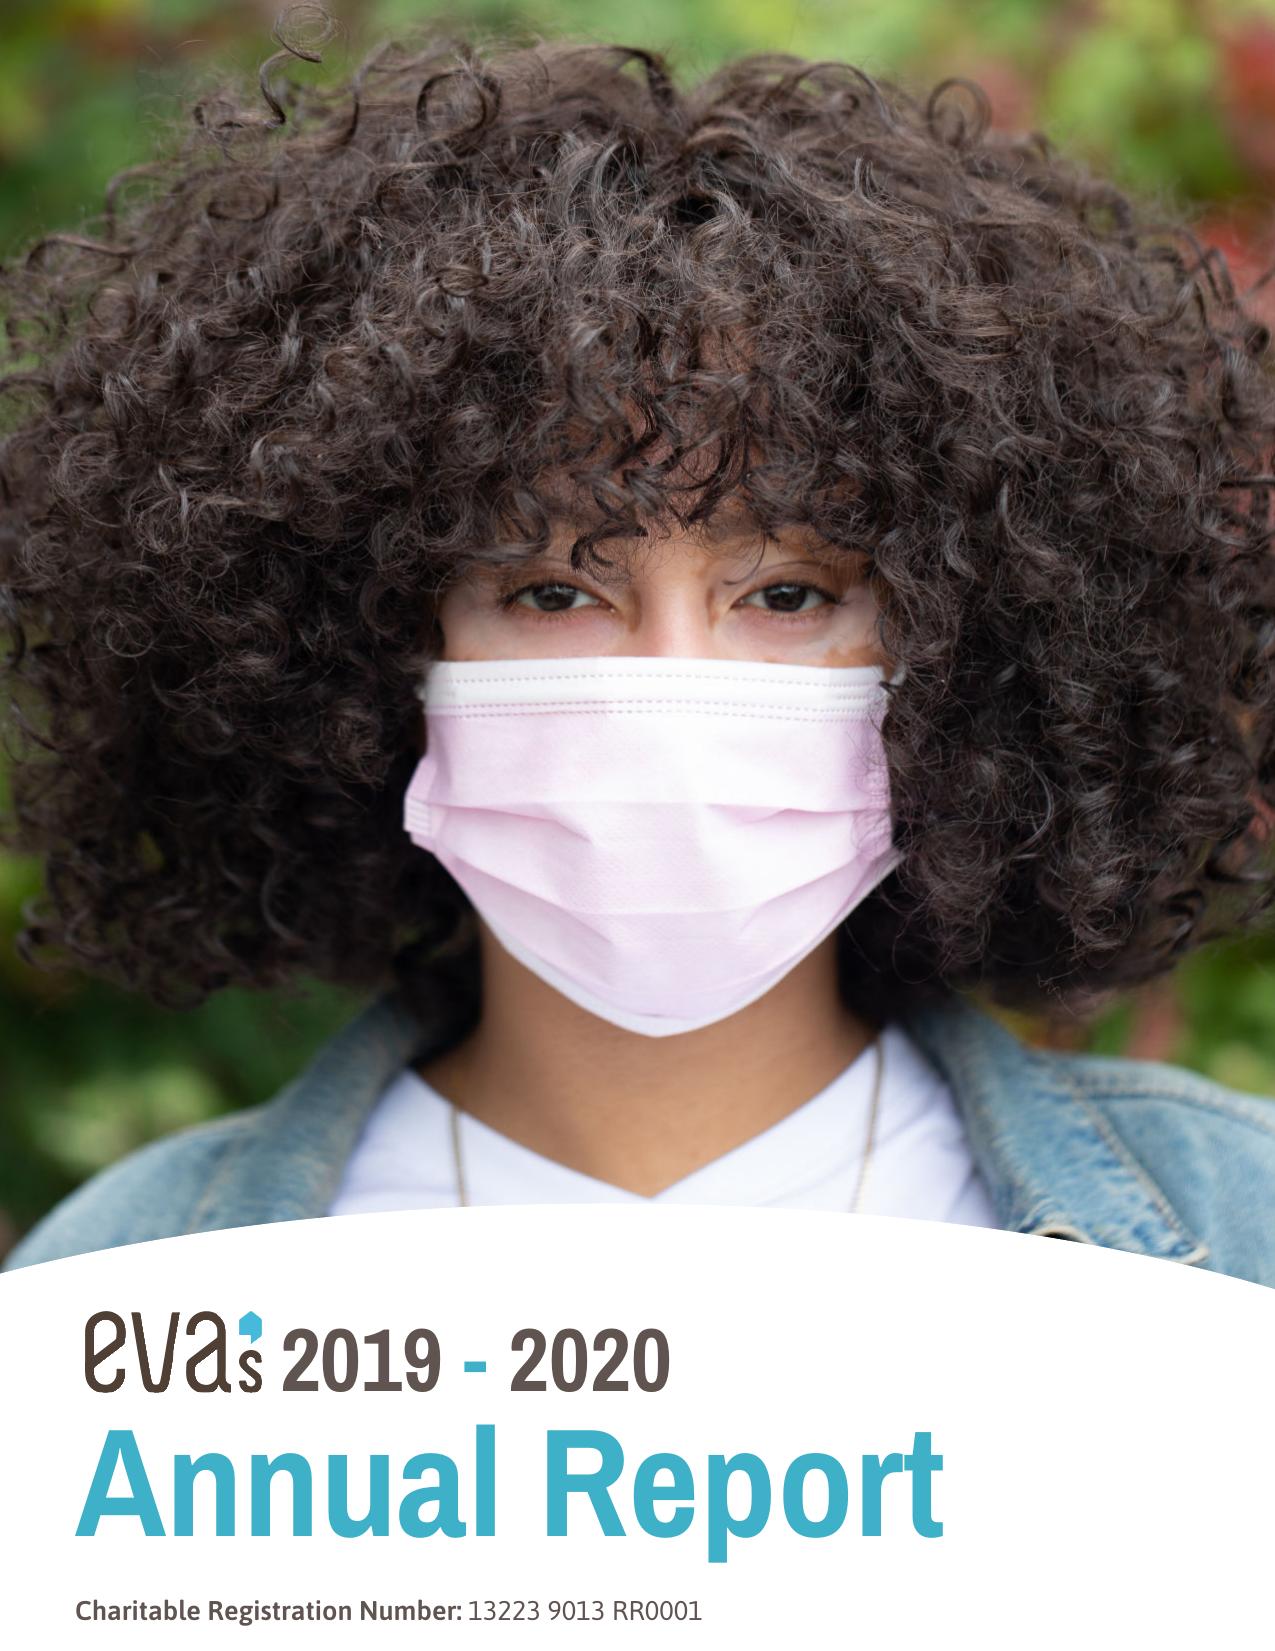 EVAS 2021 Annual Report